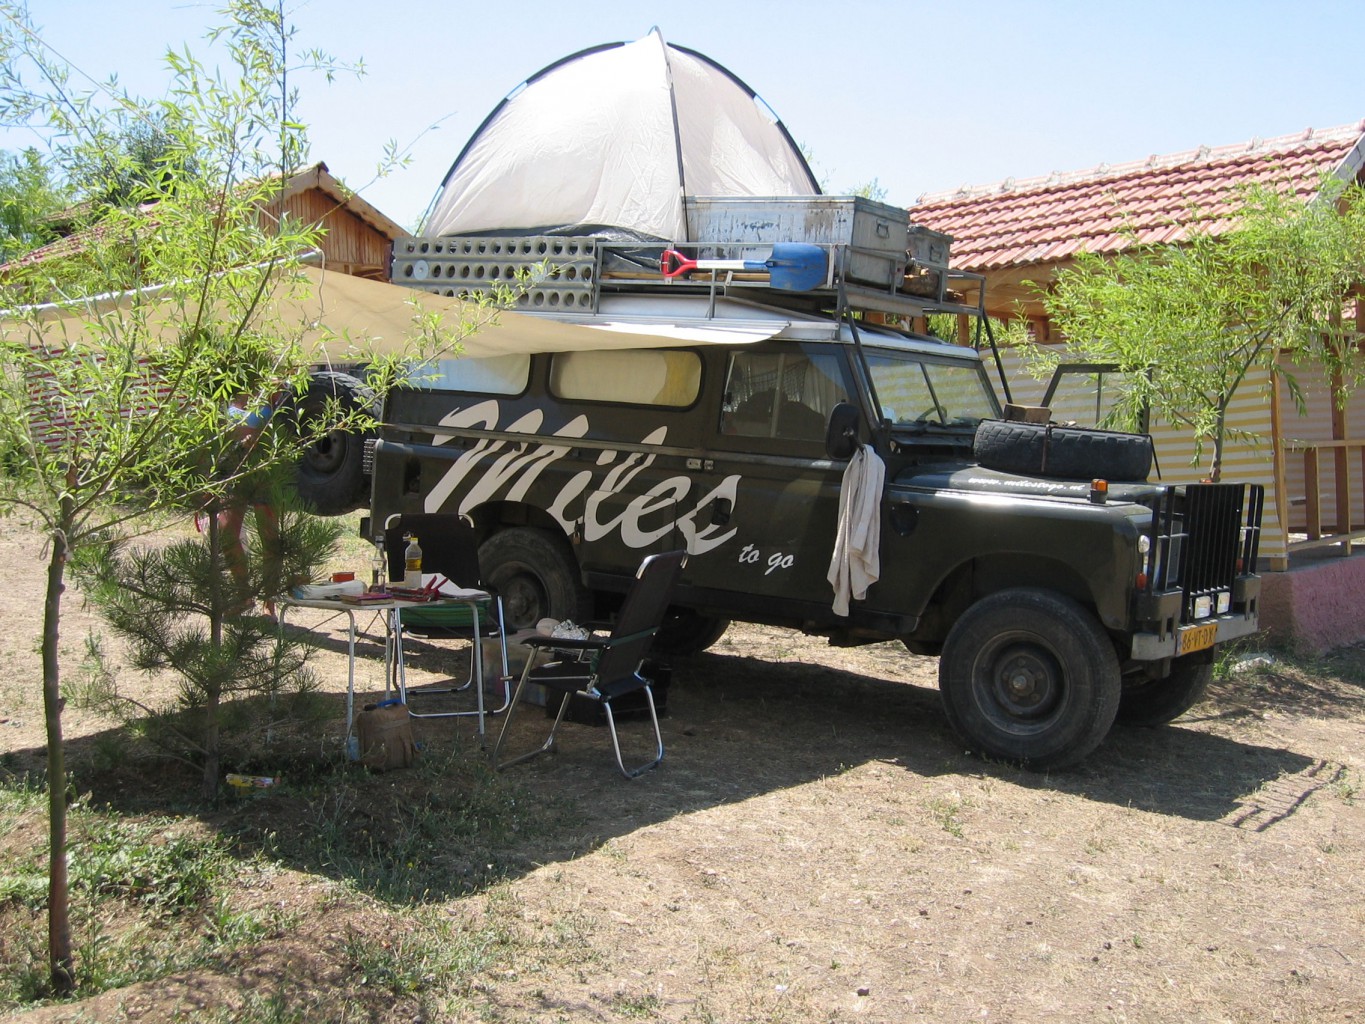 Reisverhalen over kamperen met de Land Rover